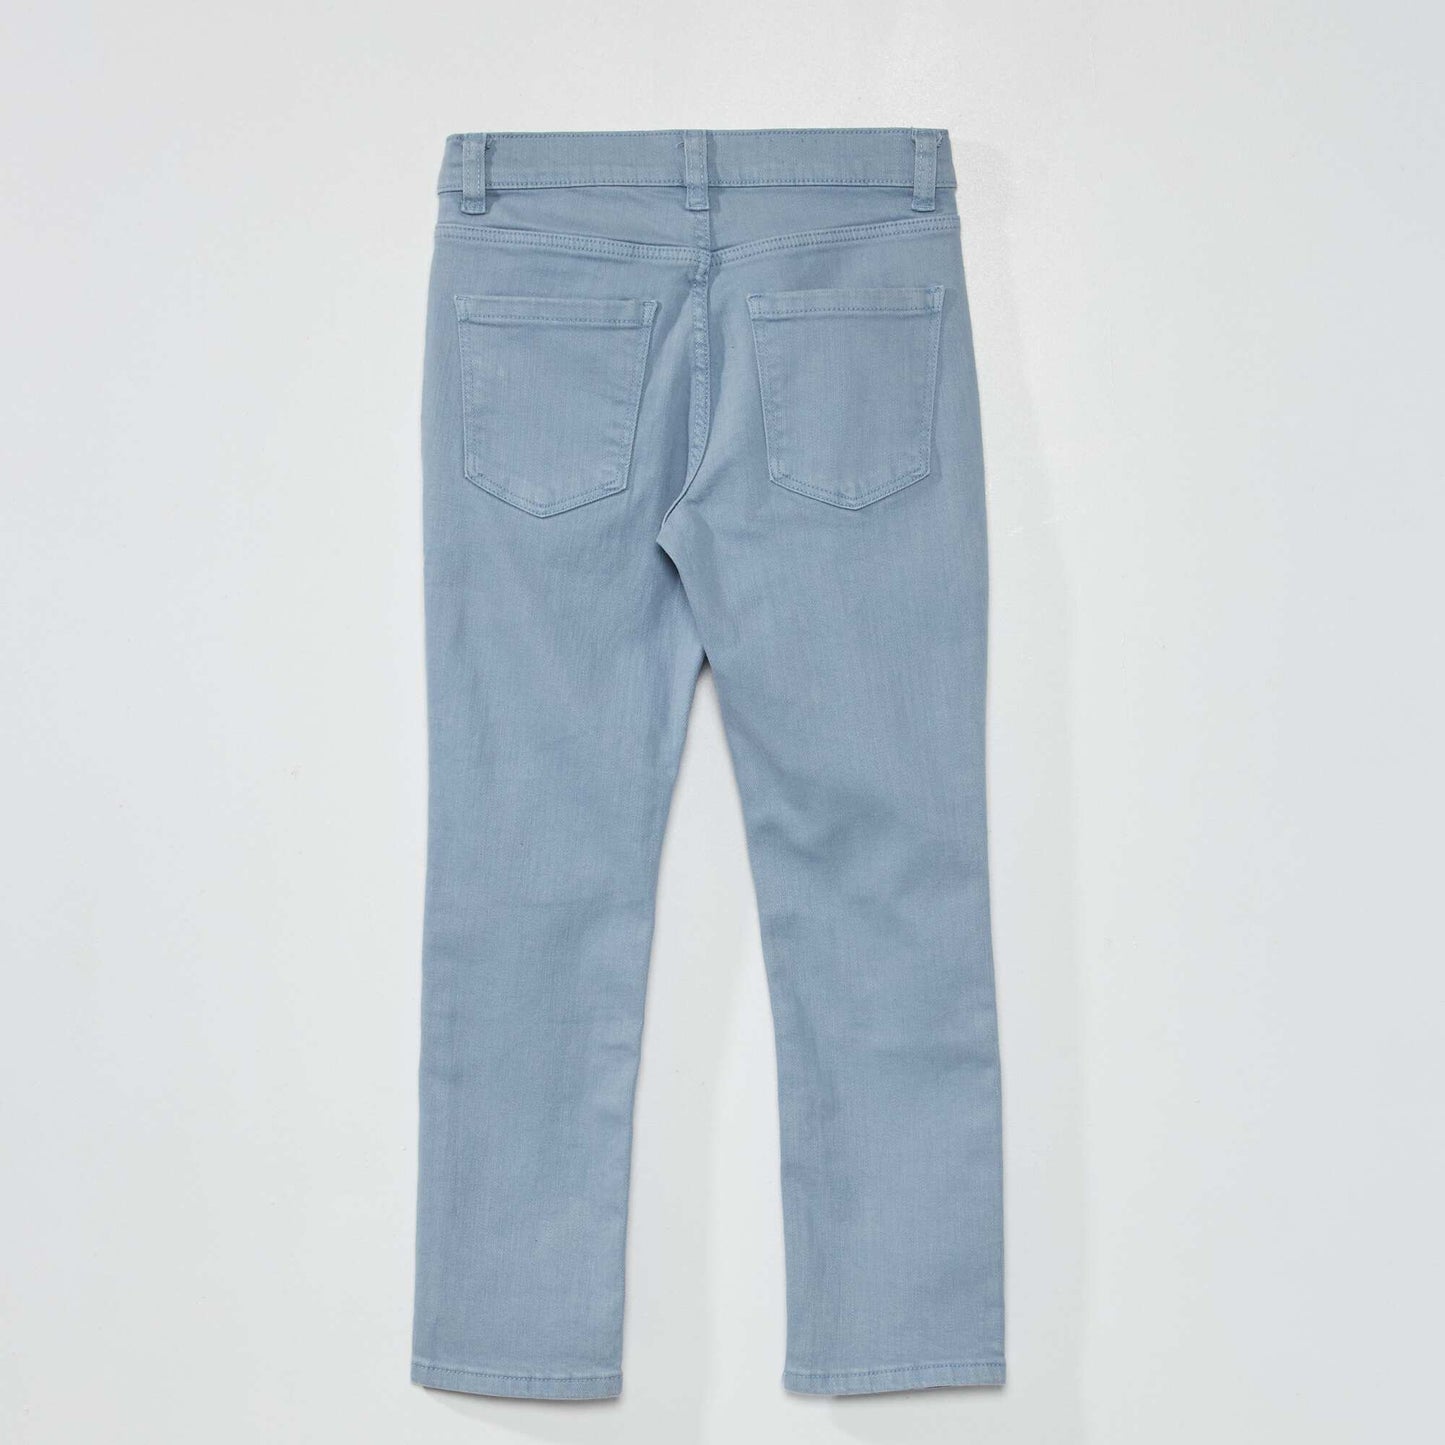 Slim-fit 5-pocket jeans denim blue